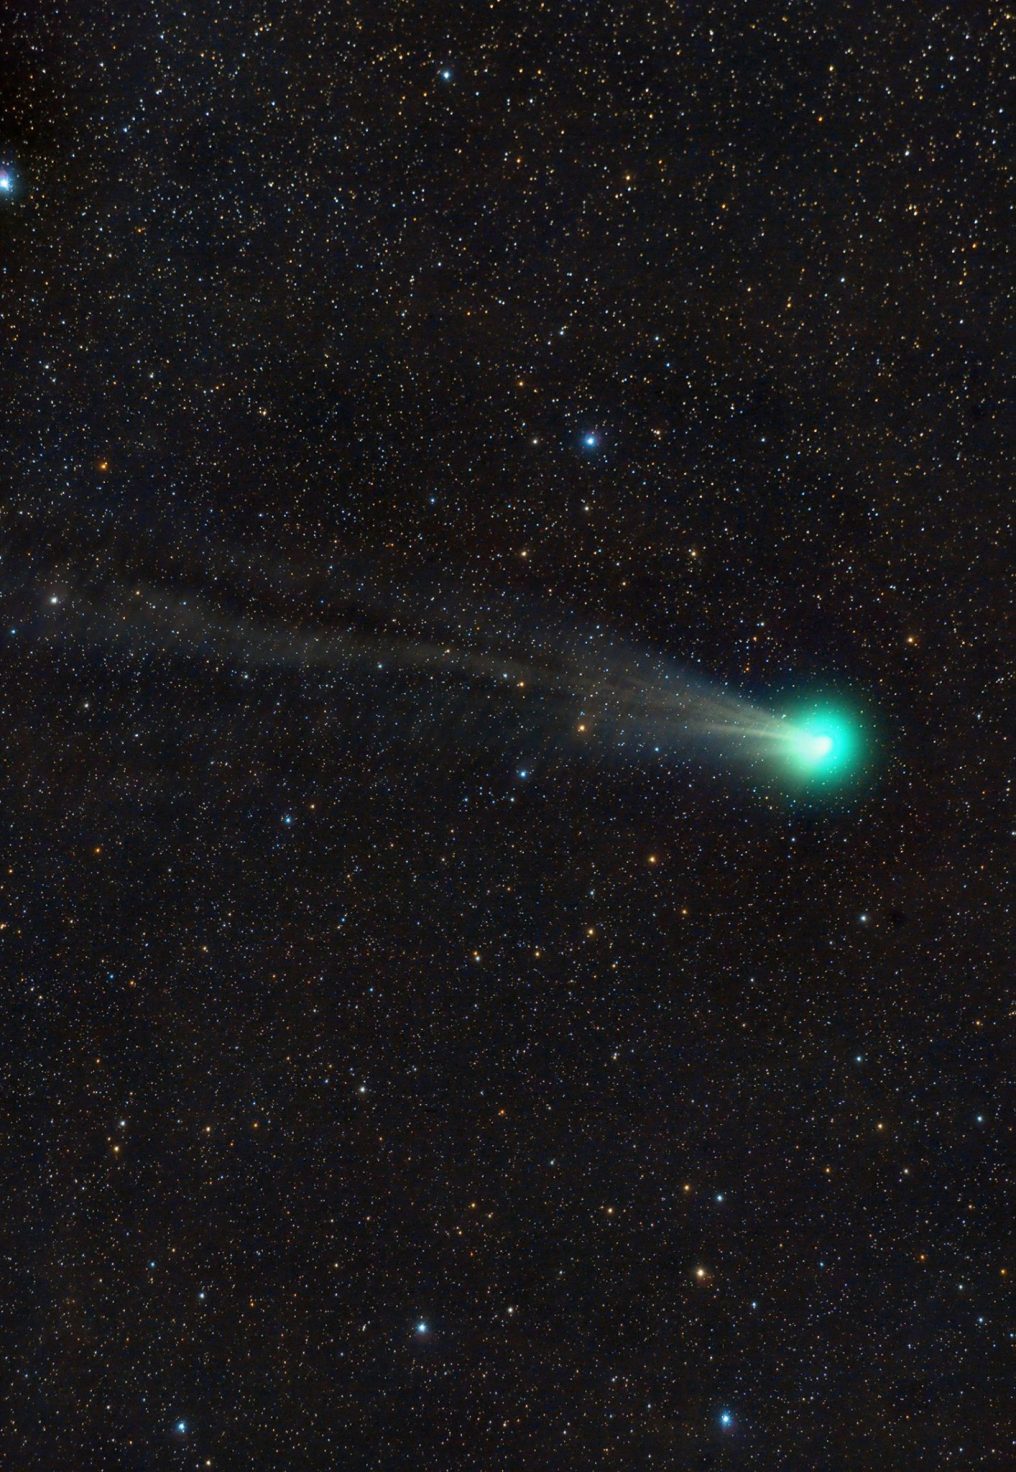 Lovejoy comet